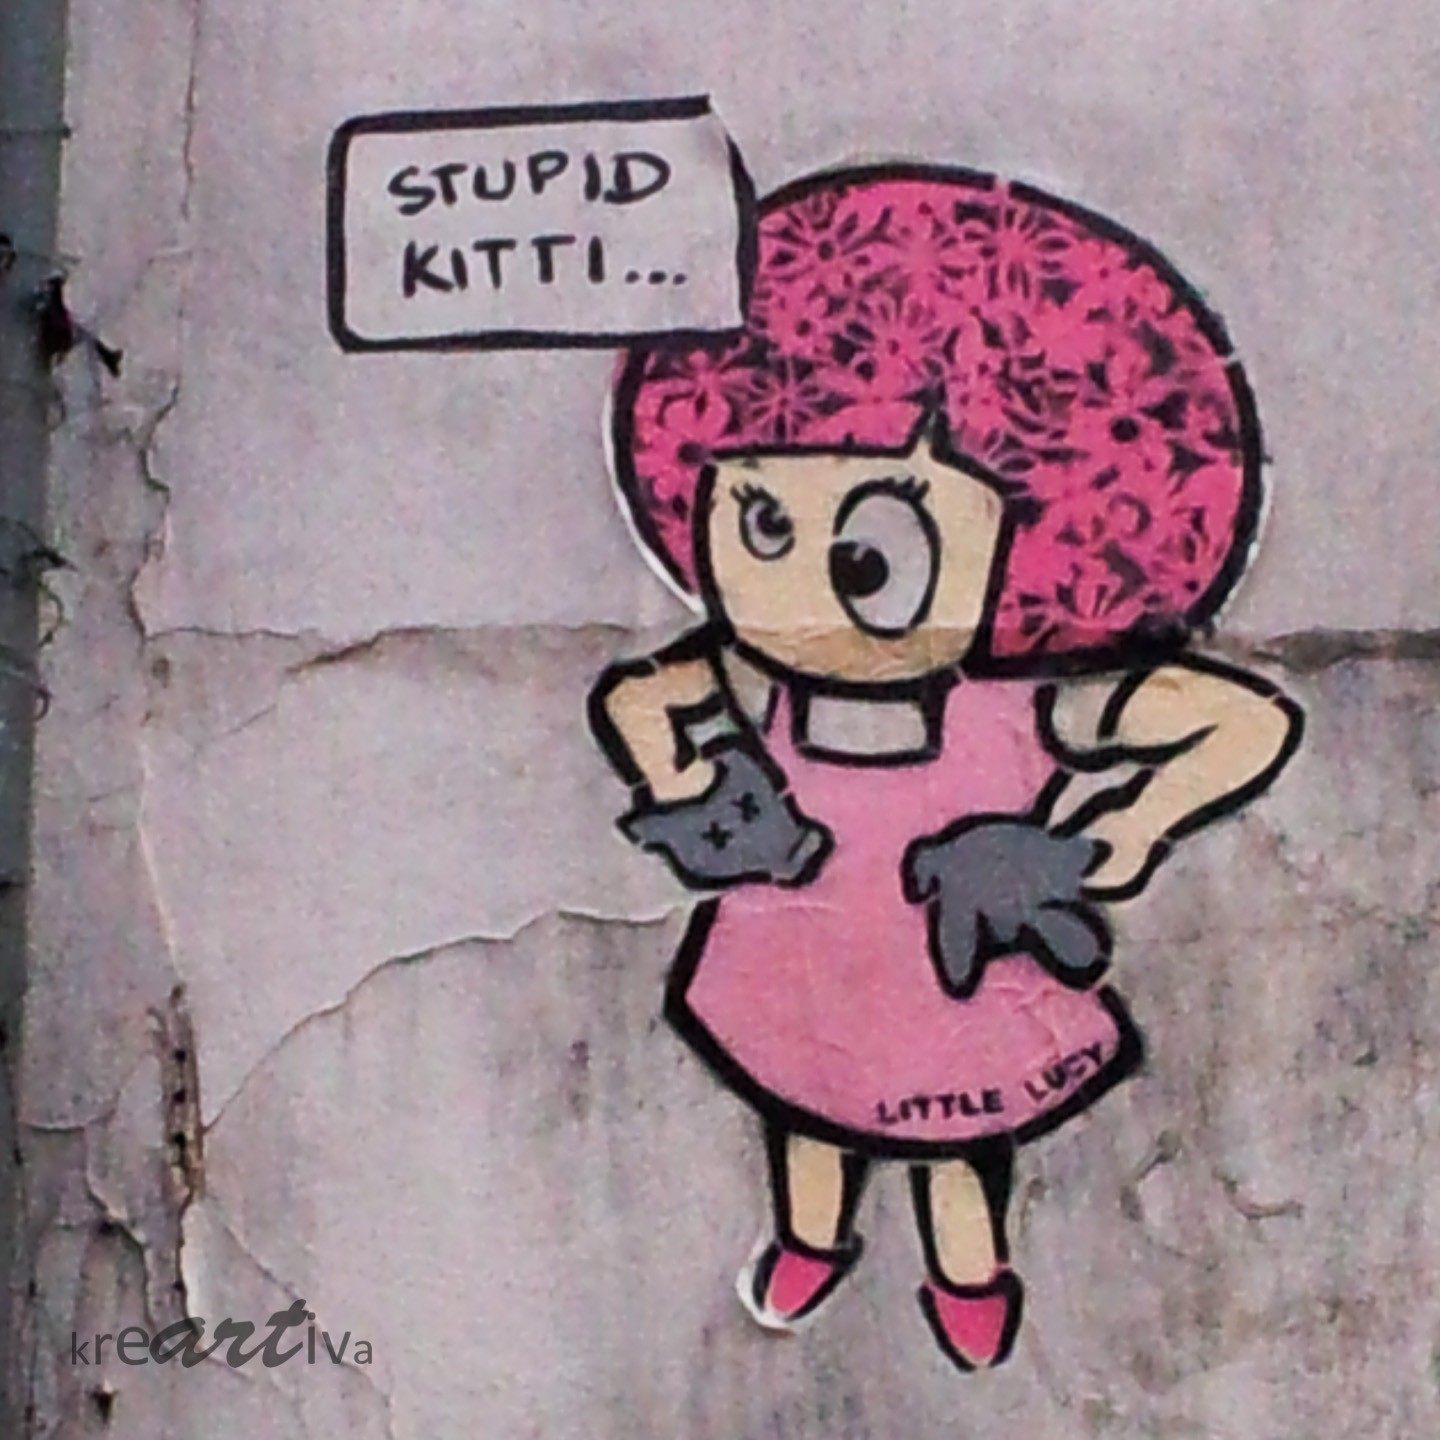 Stupid Kitti behaeded – Little Lucy köpft Kitti